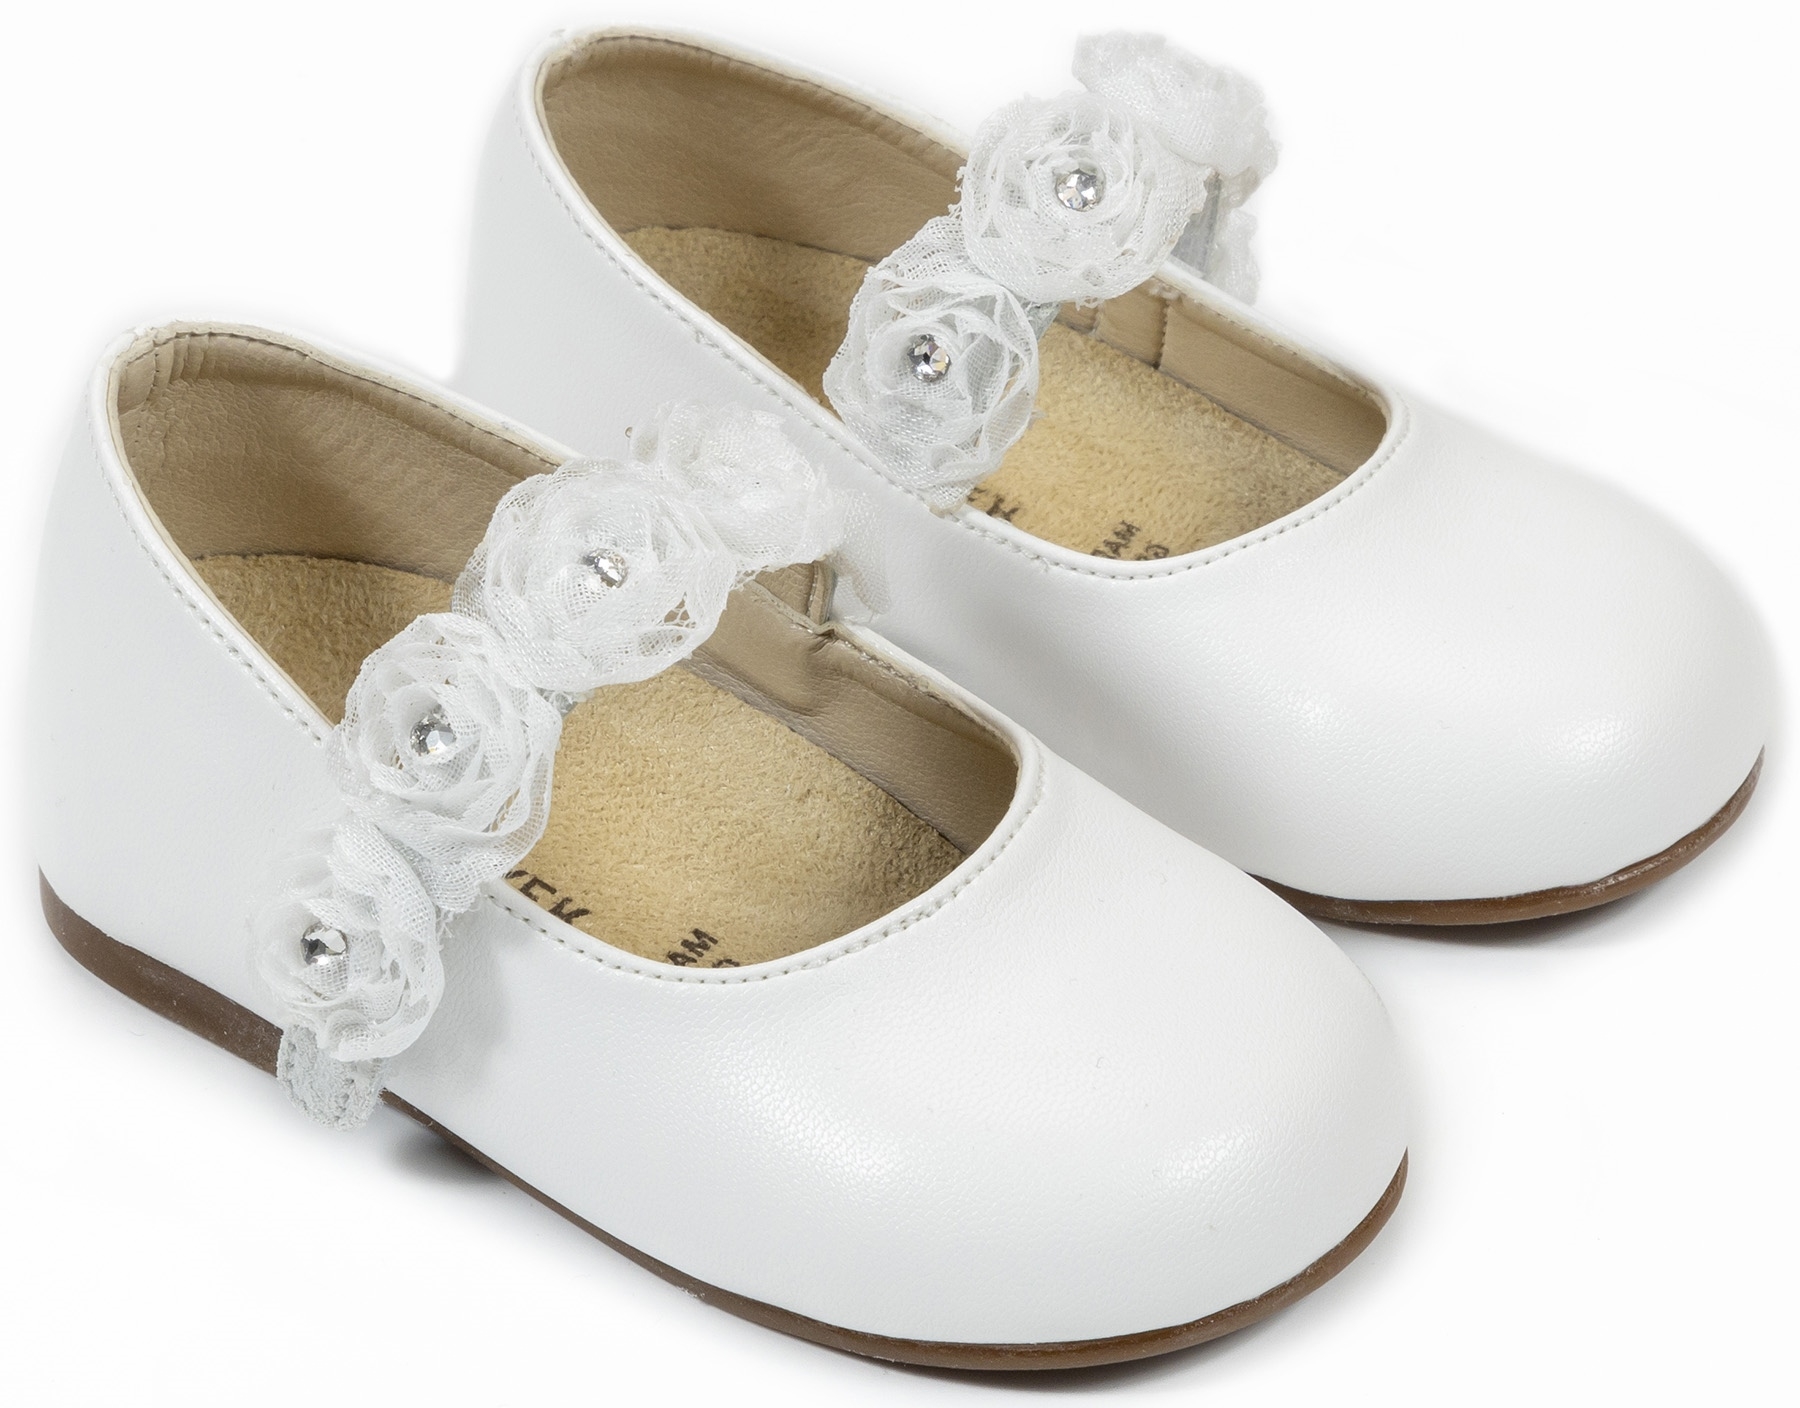 βαπτιστικό παπούτσι για κορίτσι παιδικό λευκό άσπρο : 1